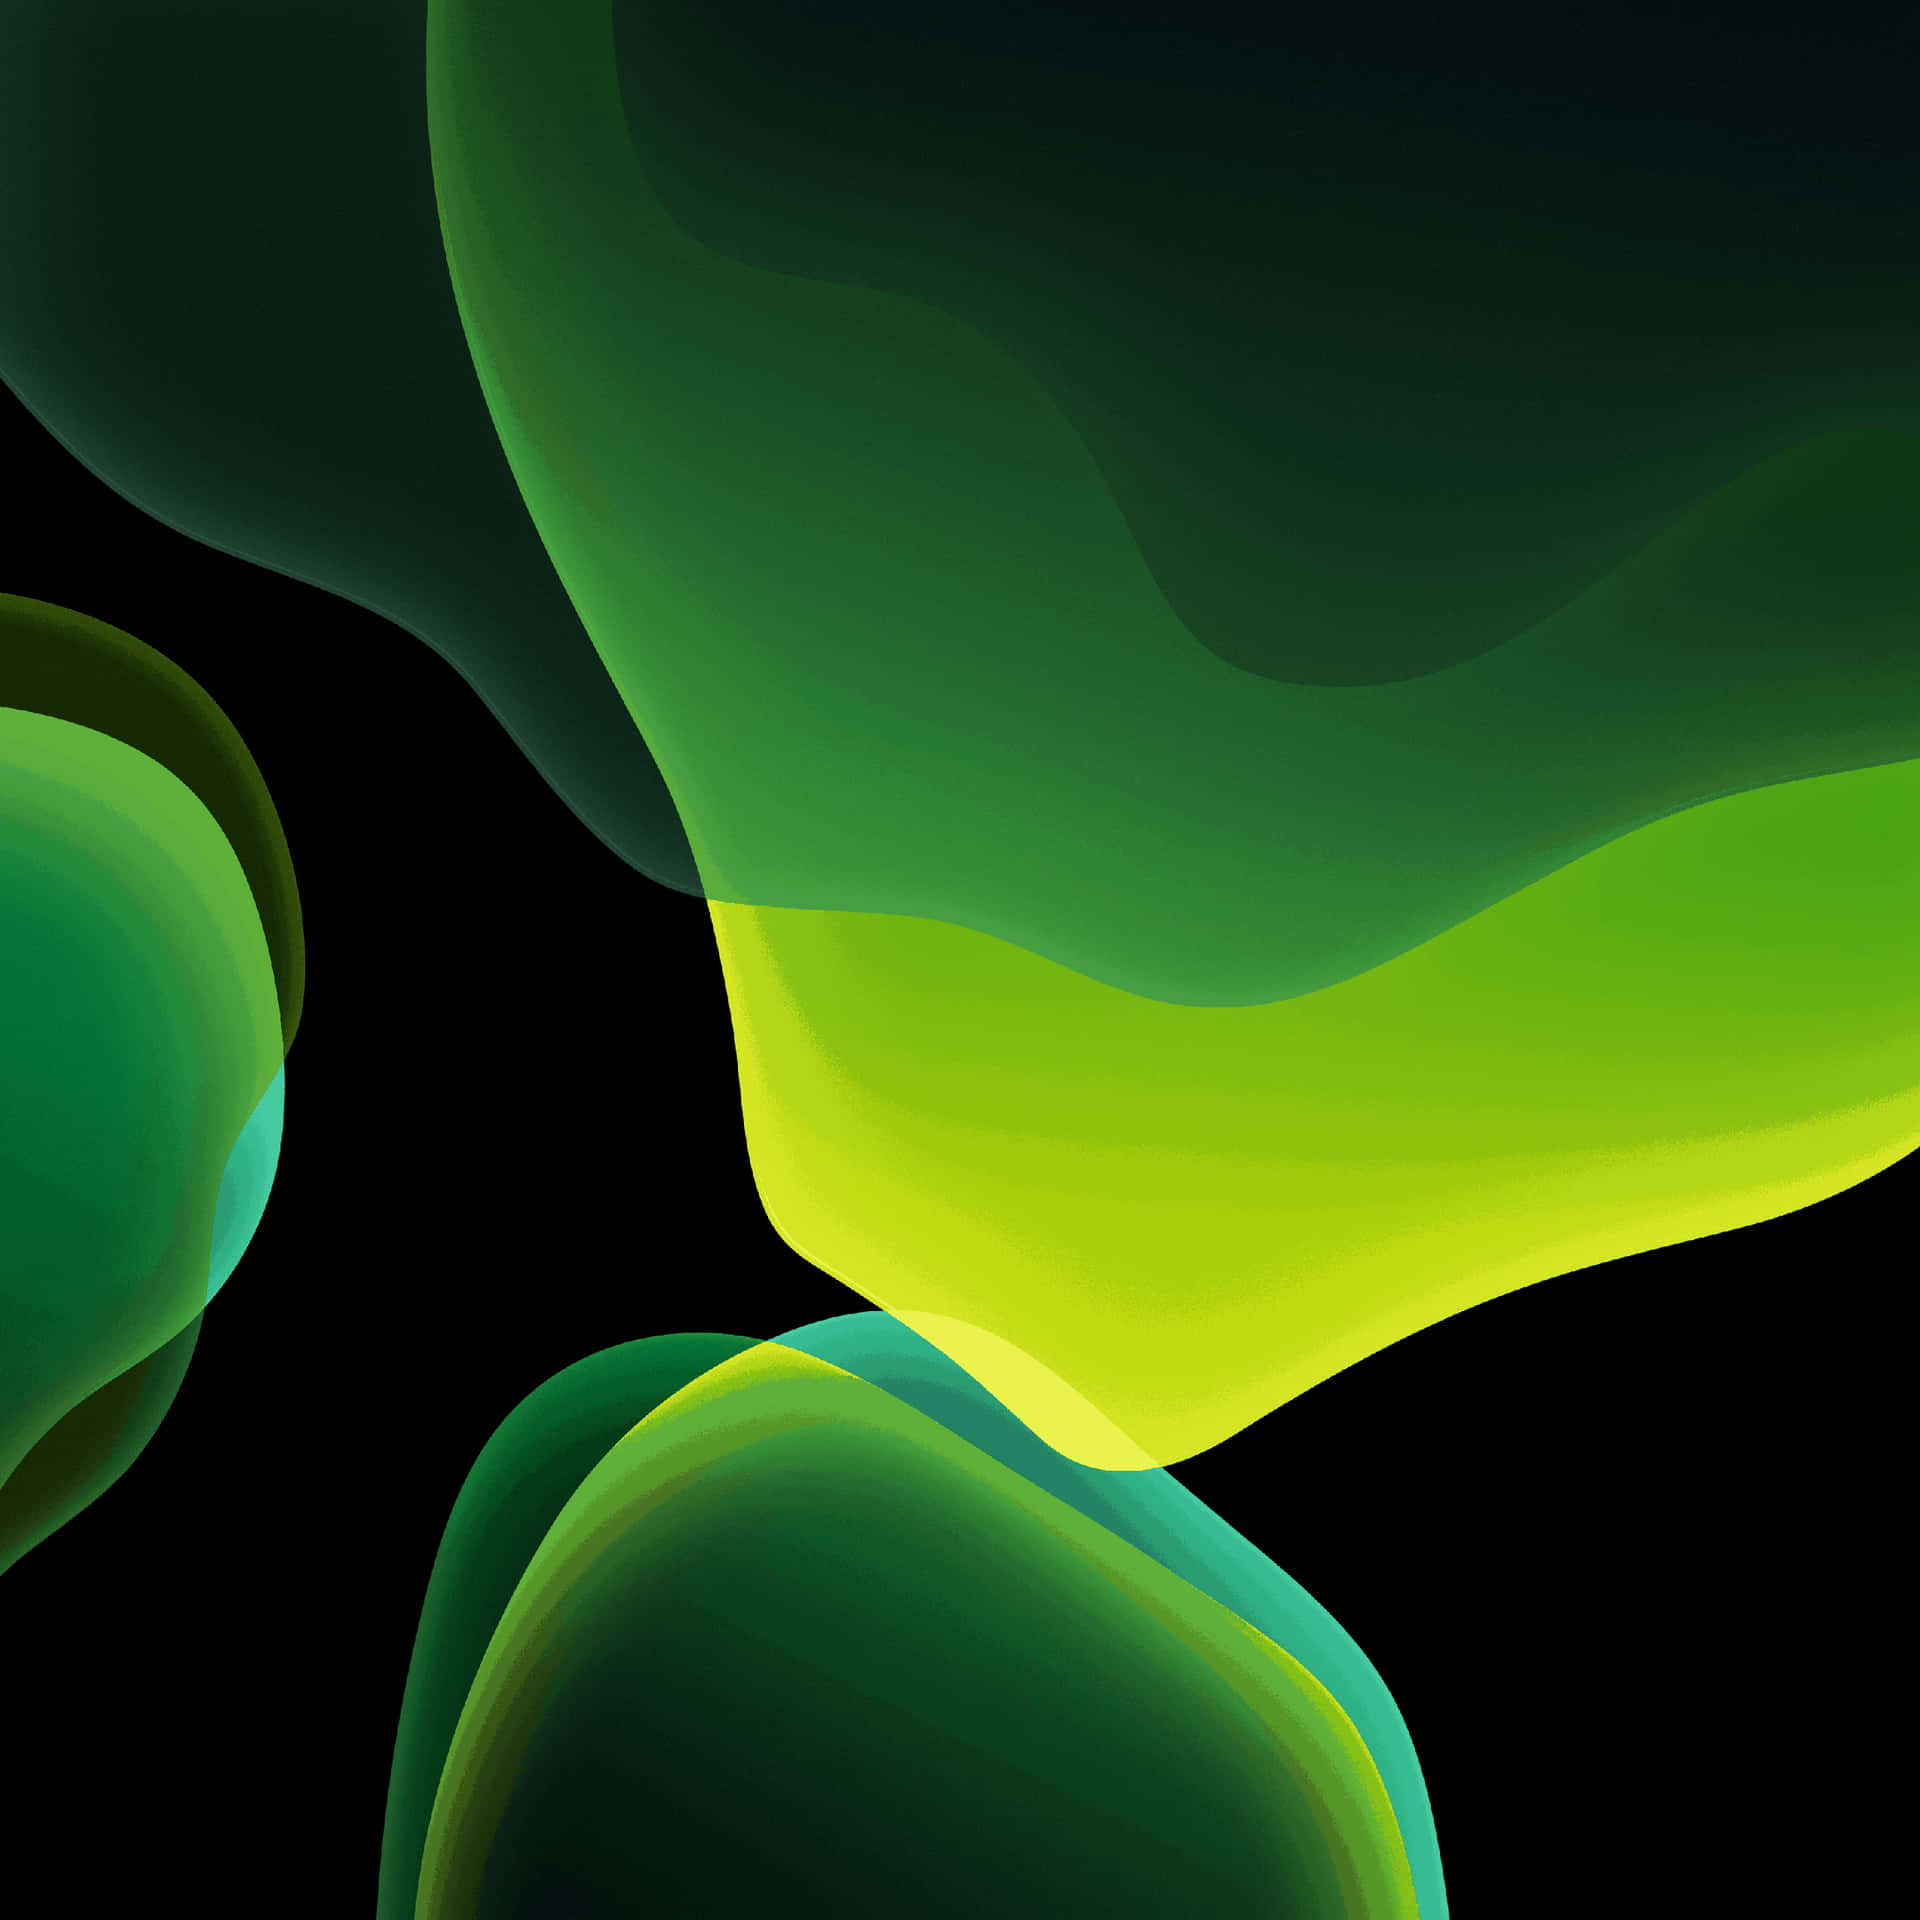 Imagenlíneas Curvas De Led Verdes Brillantes. Fondo de pantalla